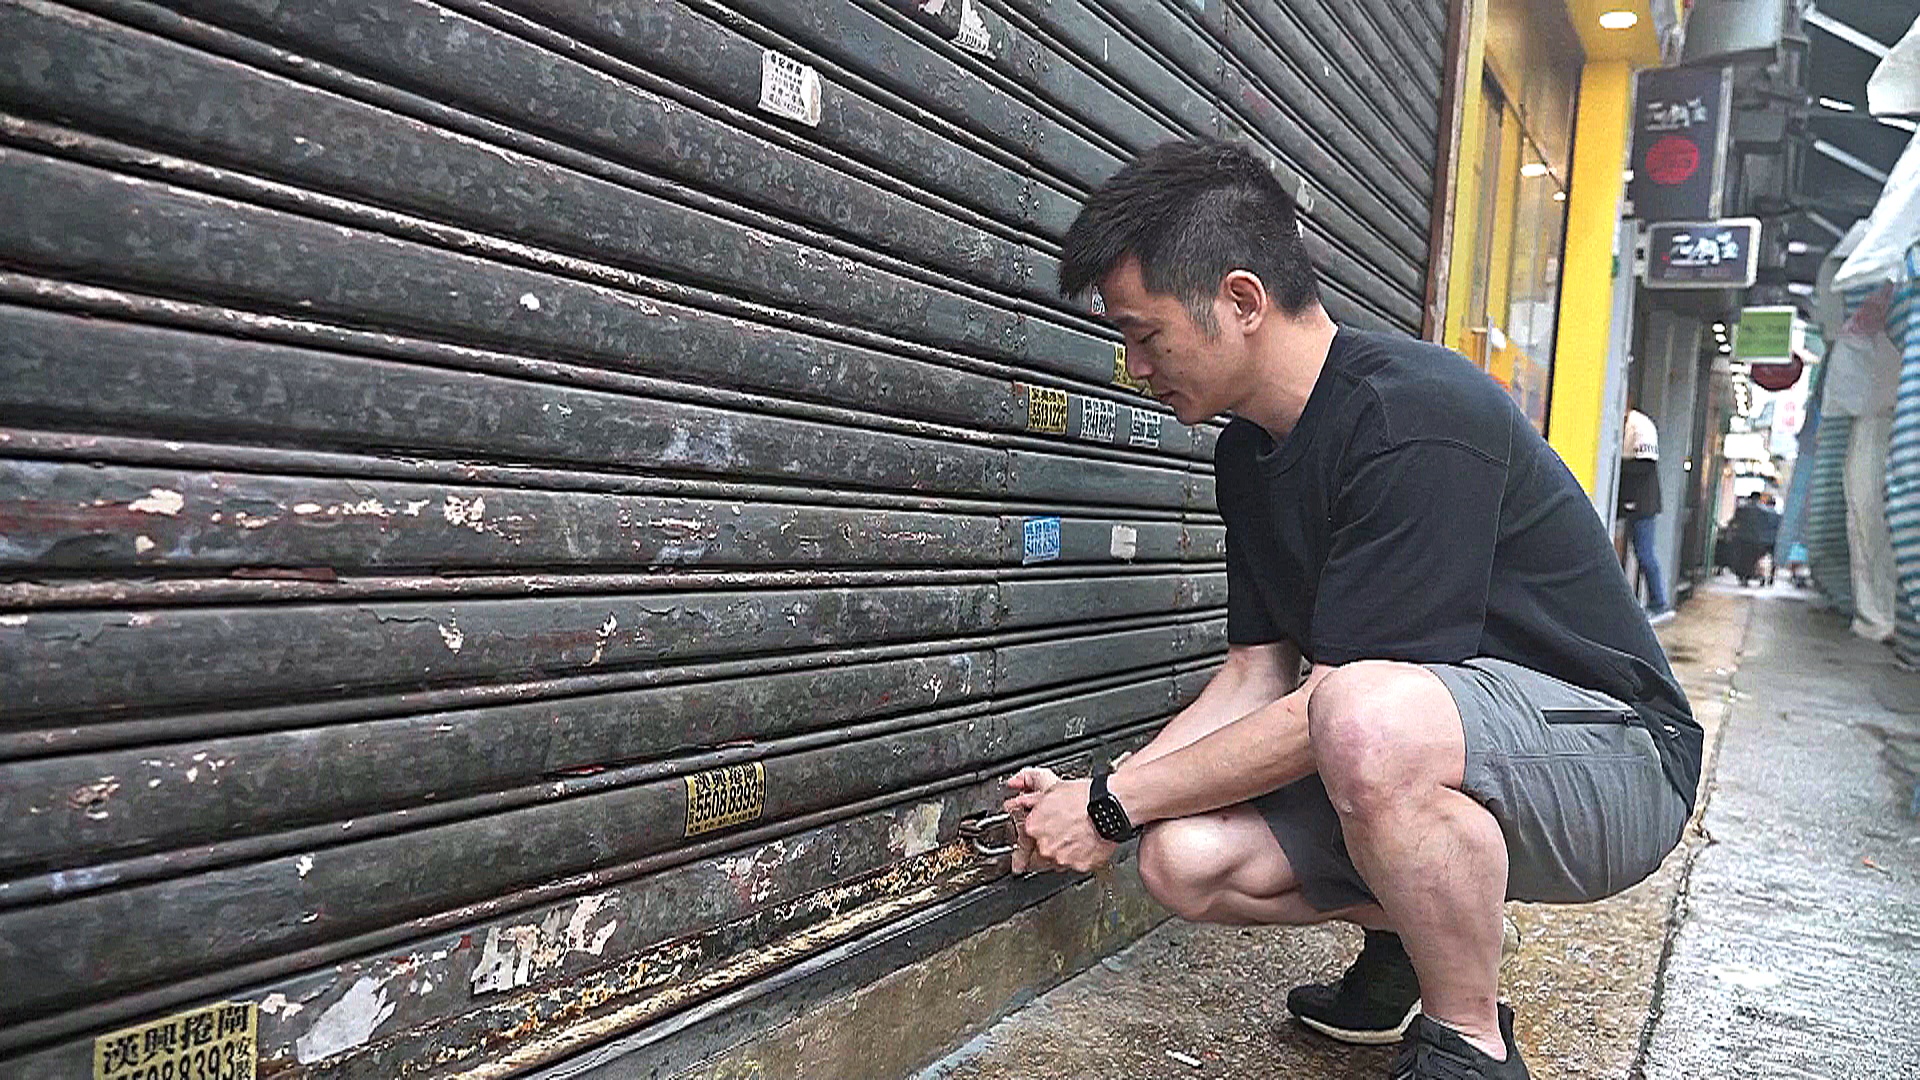 Бизнесмены Гонконга вынуждены закрывать магазины